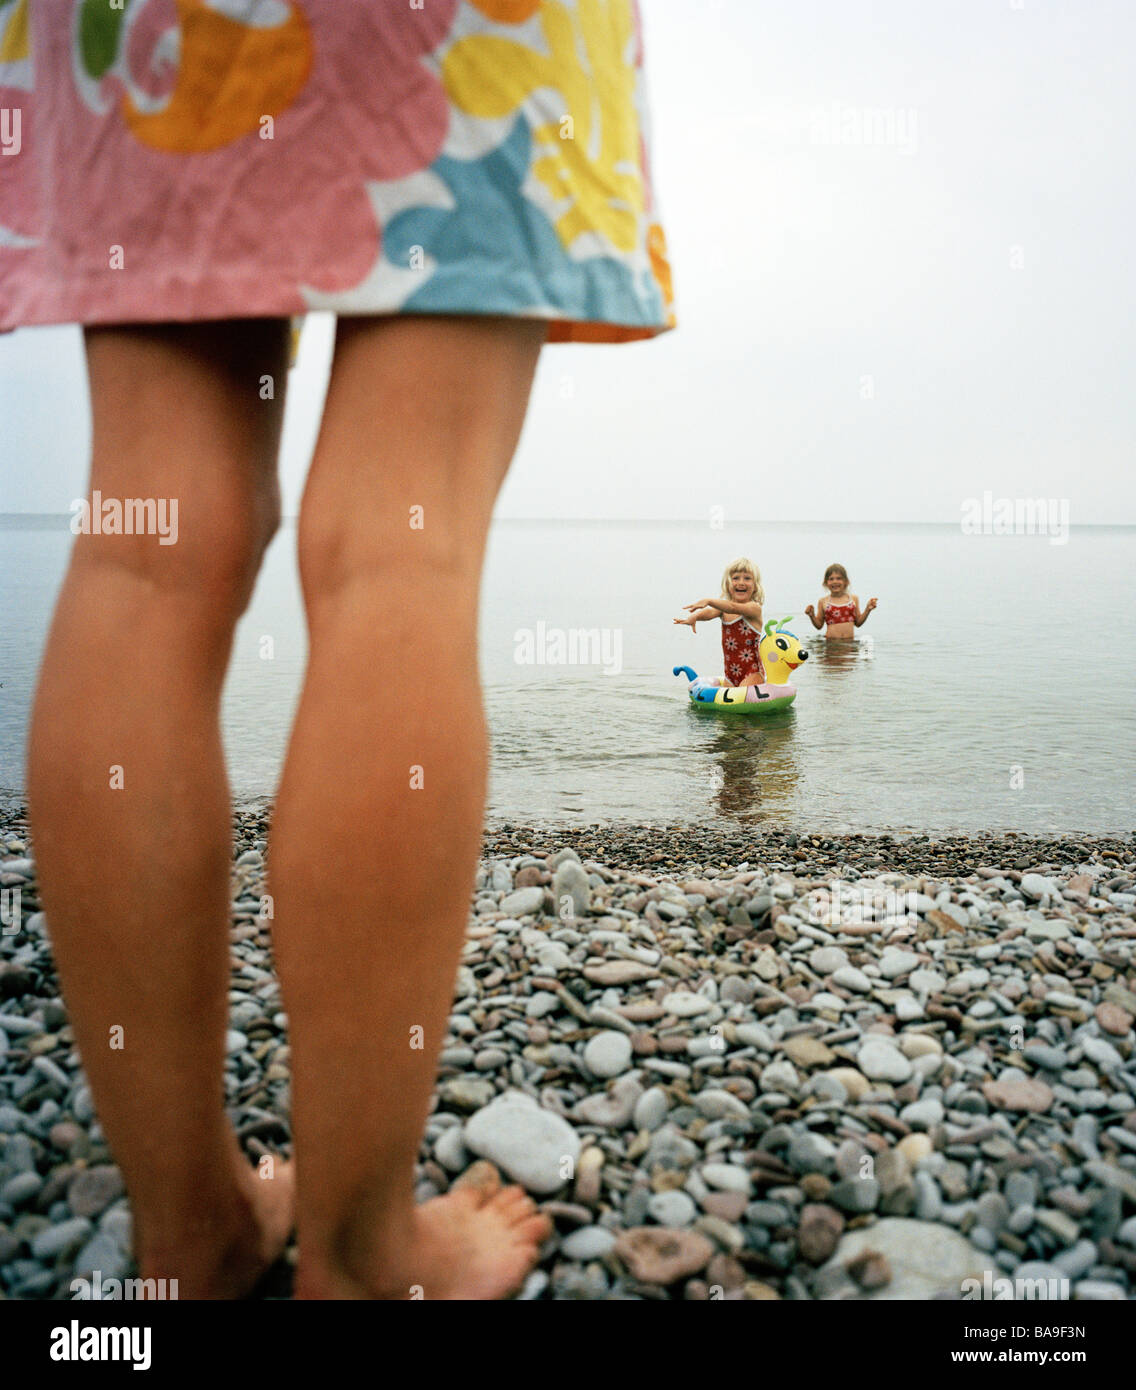 Mutter, beobachten Sie ihre Kinder im Wasser, Ooland, Schweden. Stockfoto